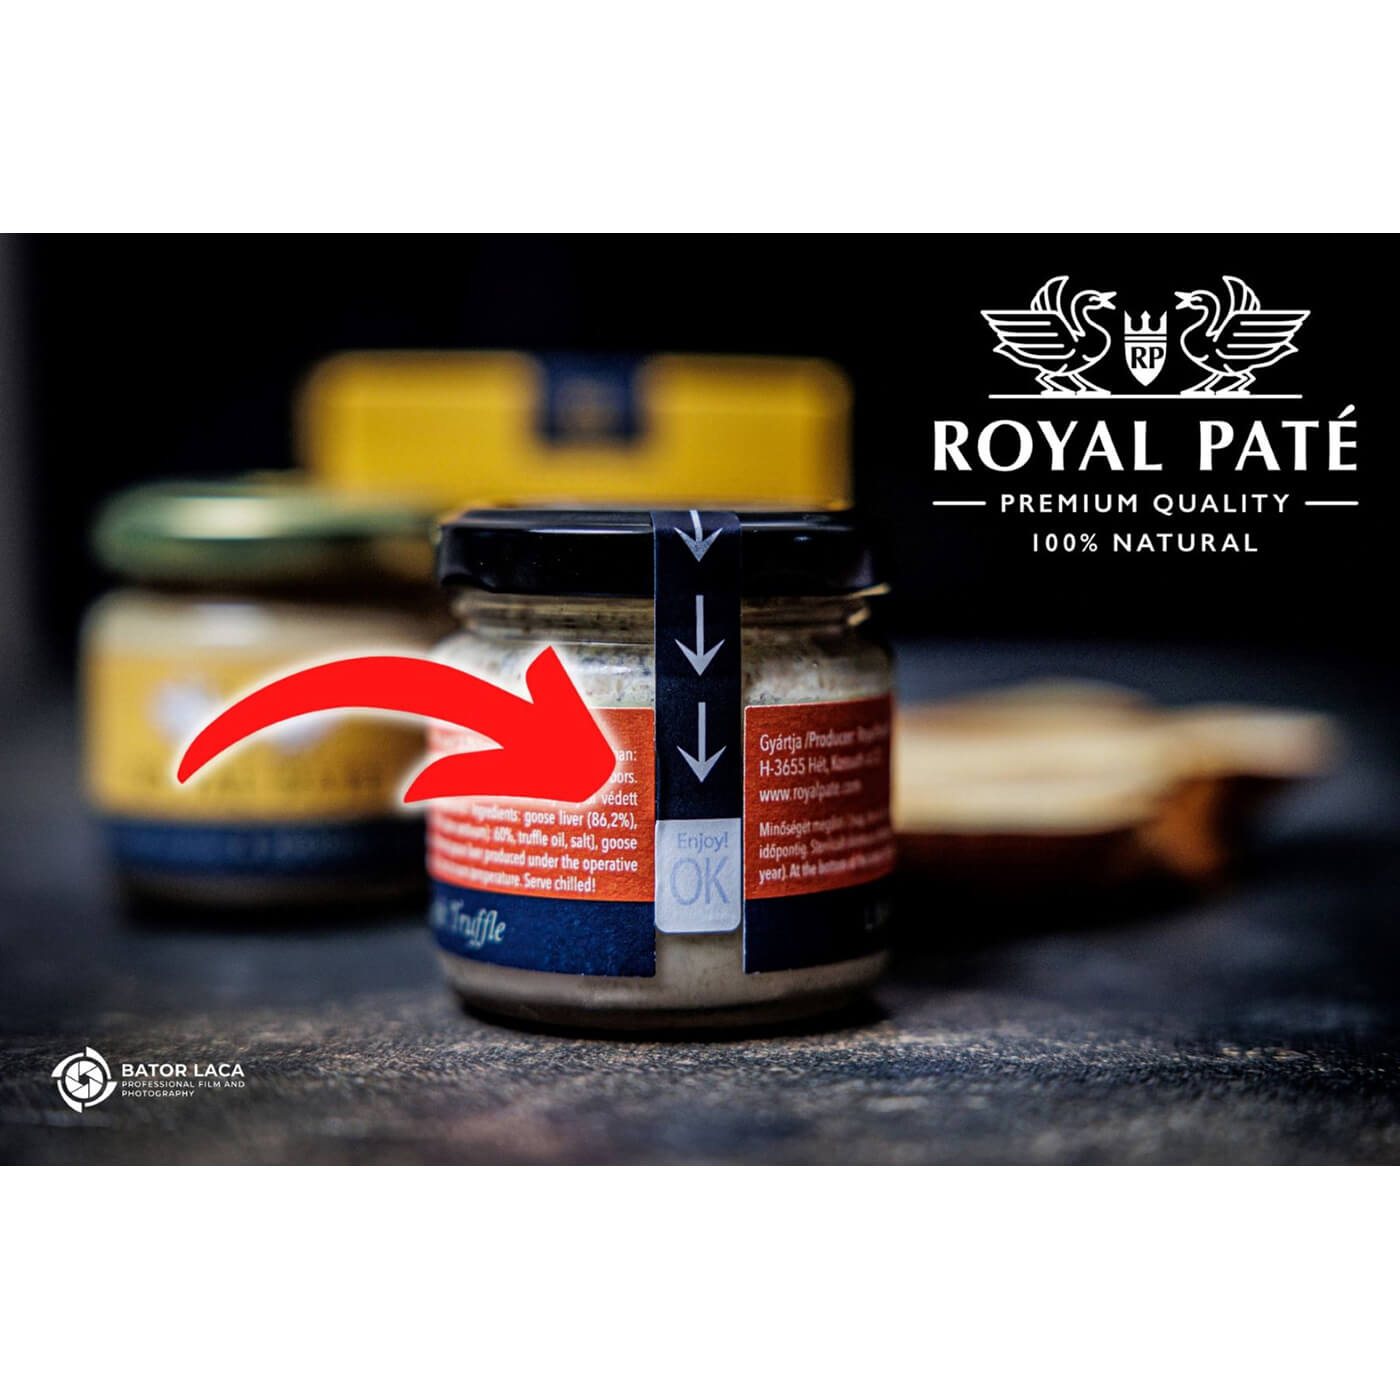 Bloc de foie gras de gasca au naturel 86% Royal Pate 70g